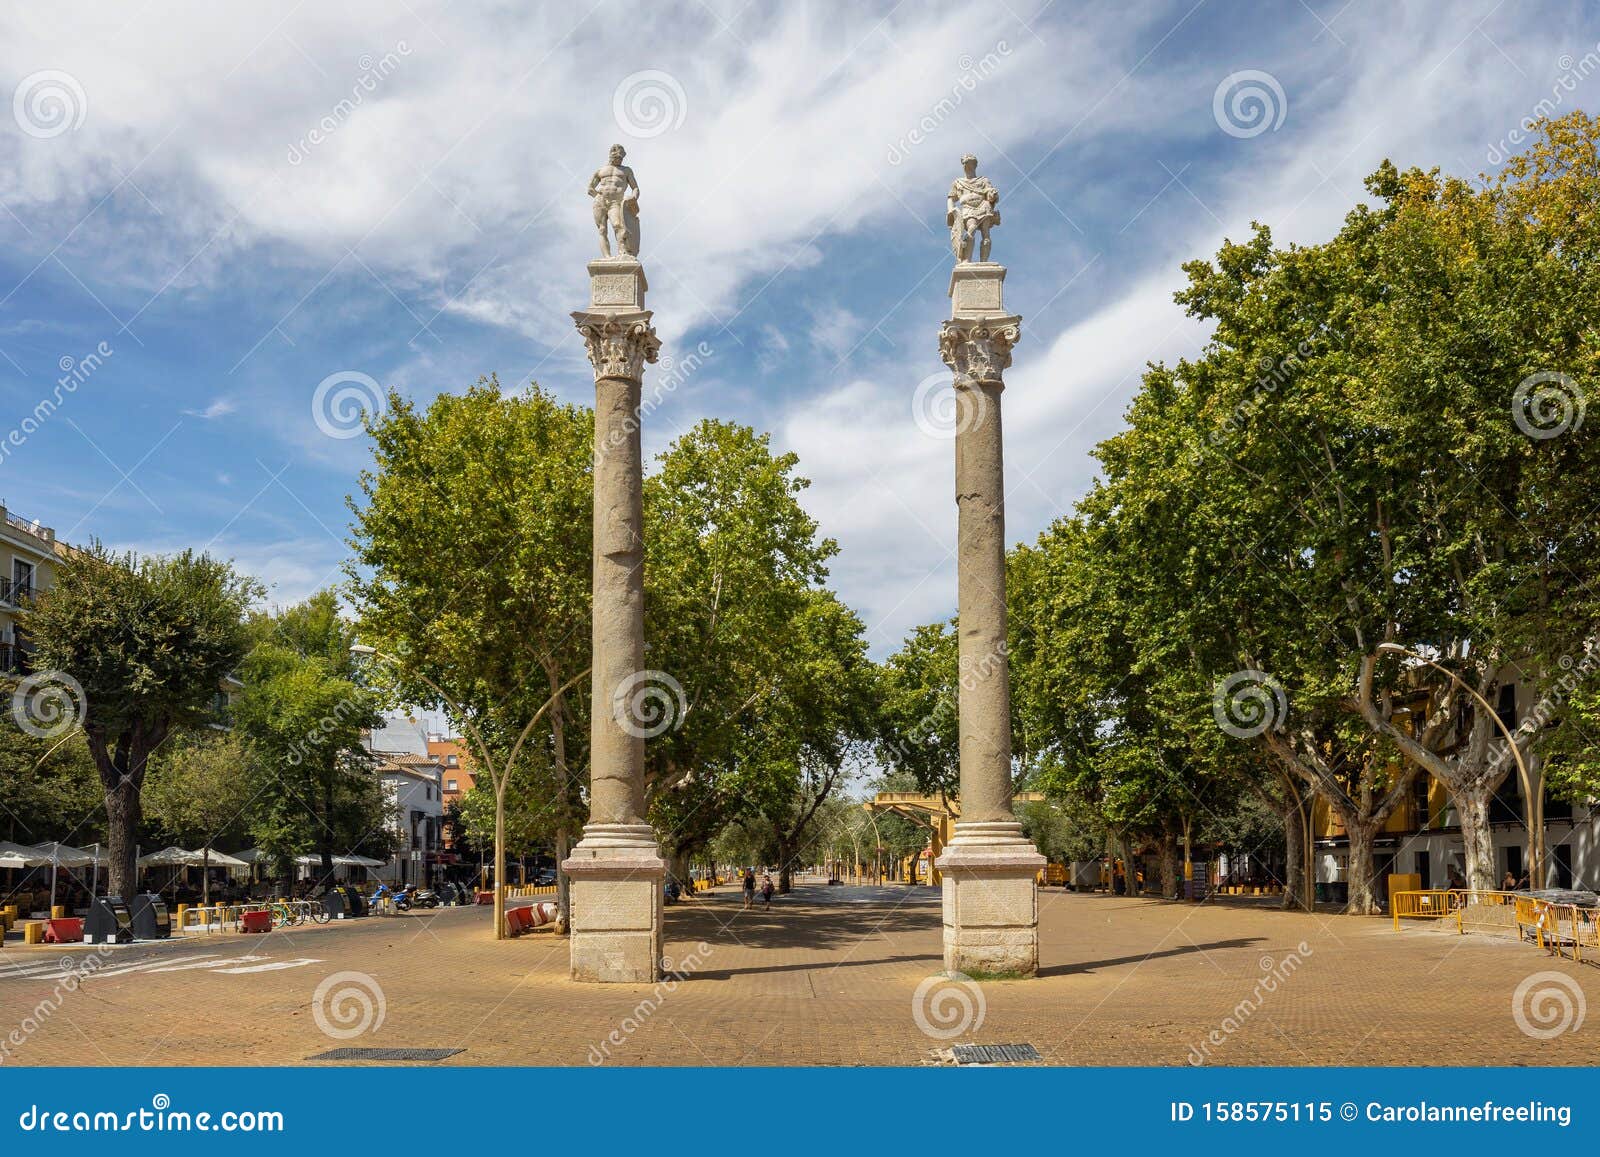 roman columns at alameda de hercules in seville, spain